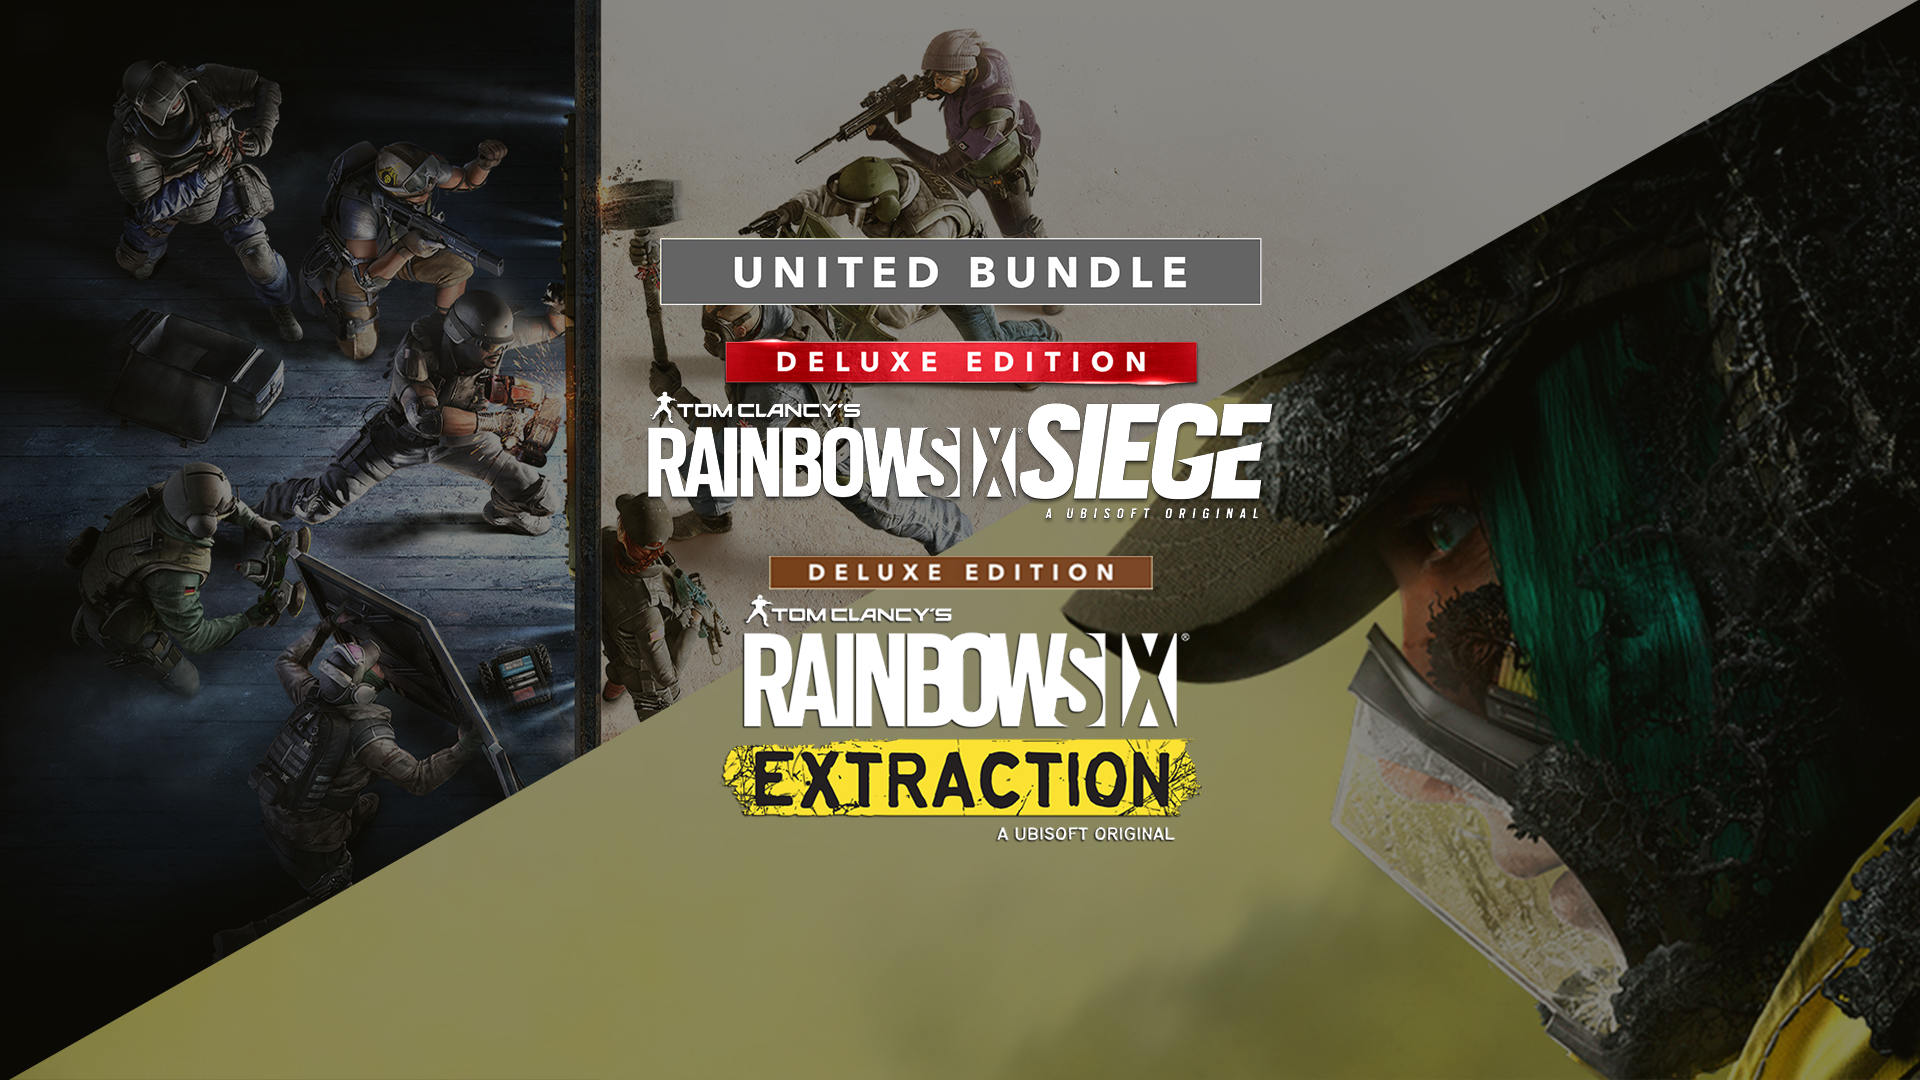 Jogo para PS4 Tom Clancys Rainbow Six: Extraction - Ubisoft - Info Store -  Prod